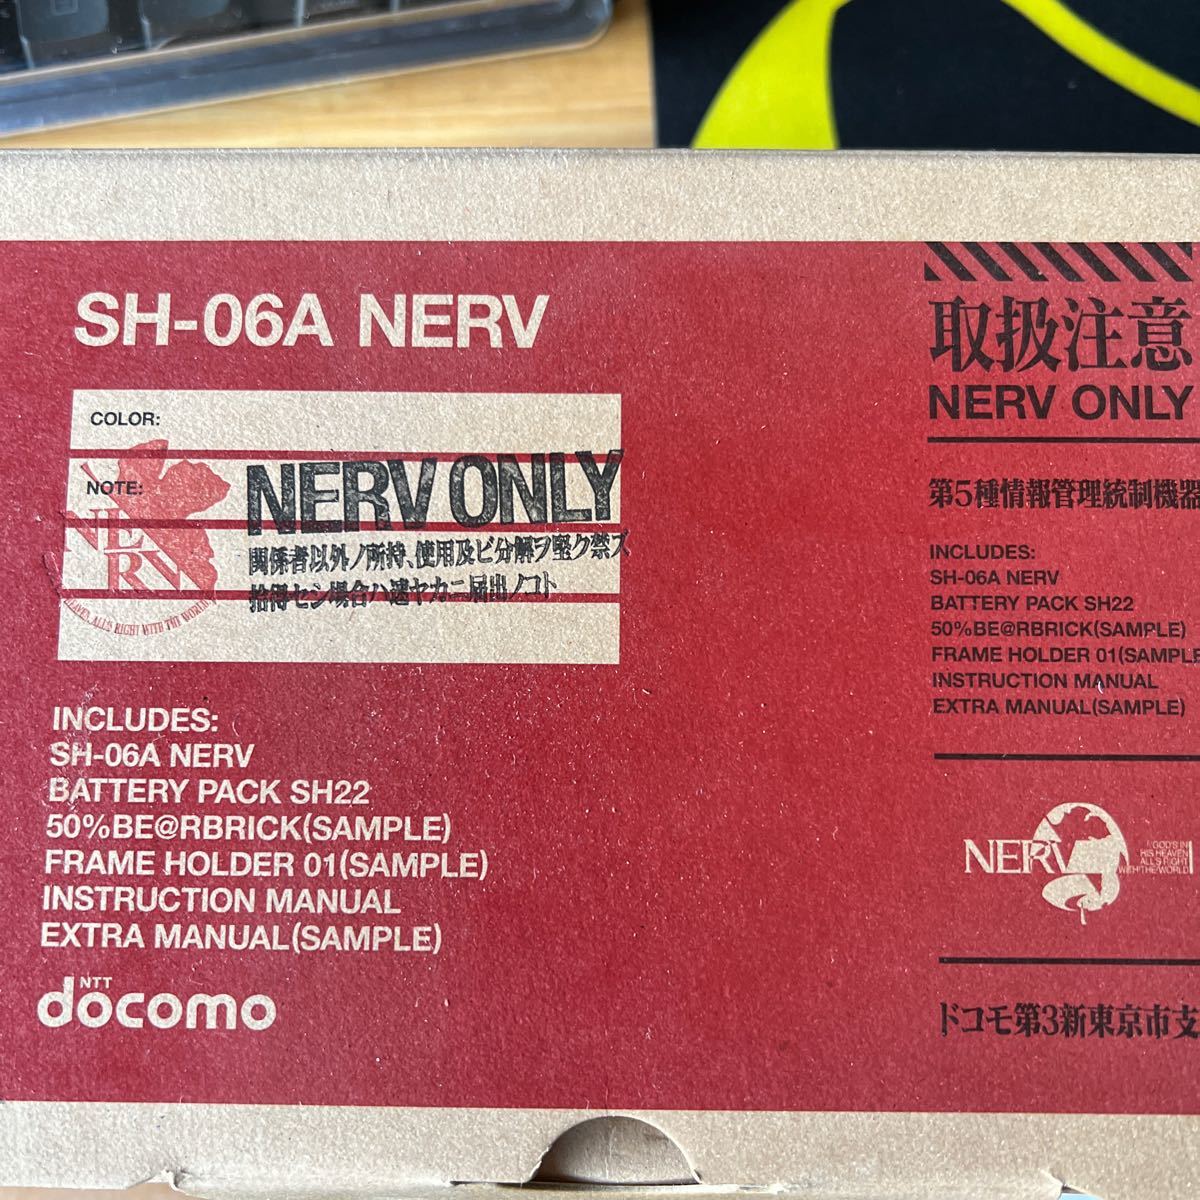 SH-06A NERV 新品未使用品 エヴァンゲリオン携帯電話SH-06A限定品